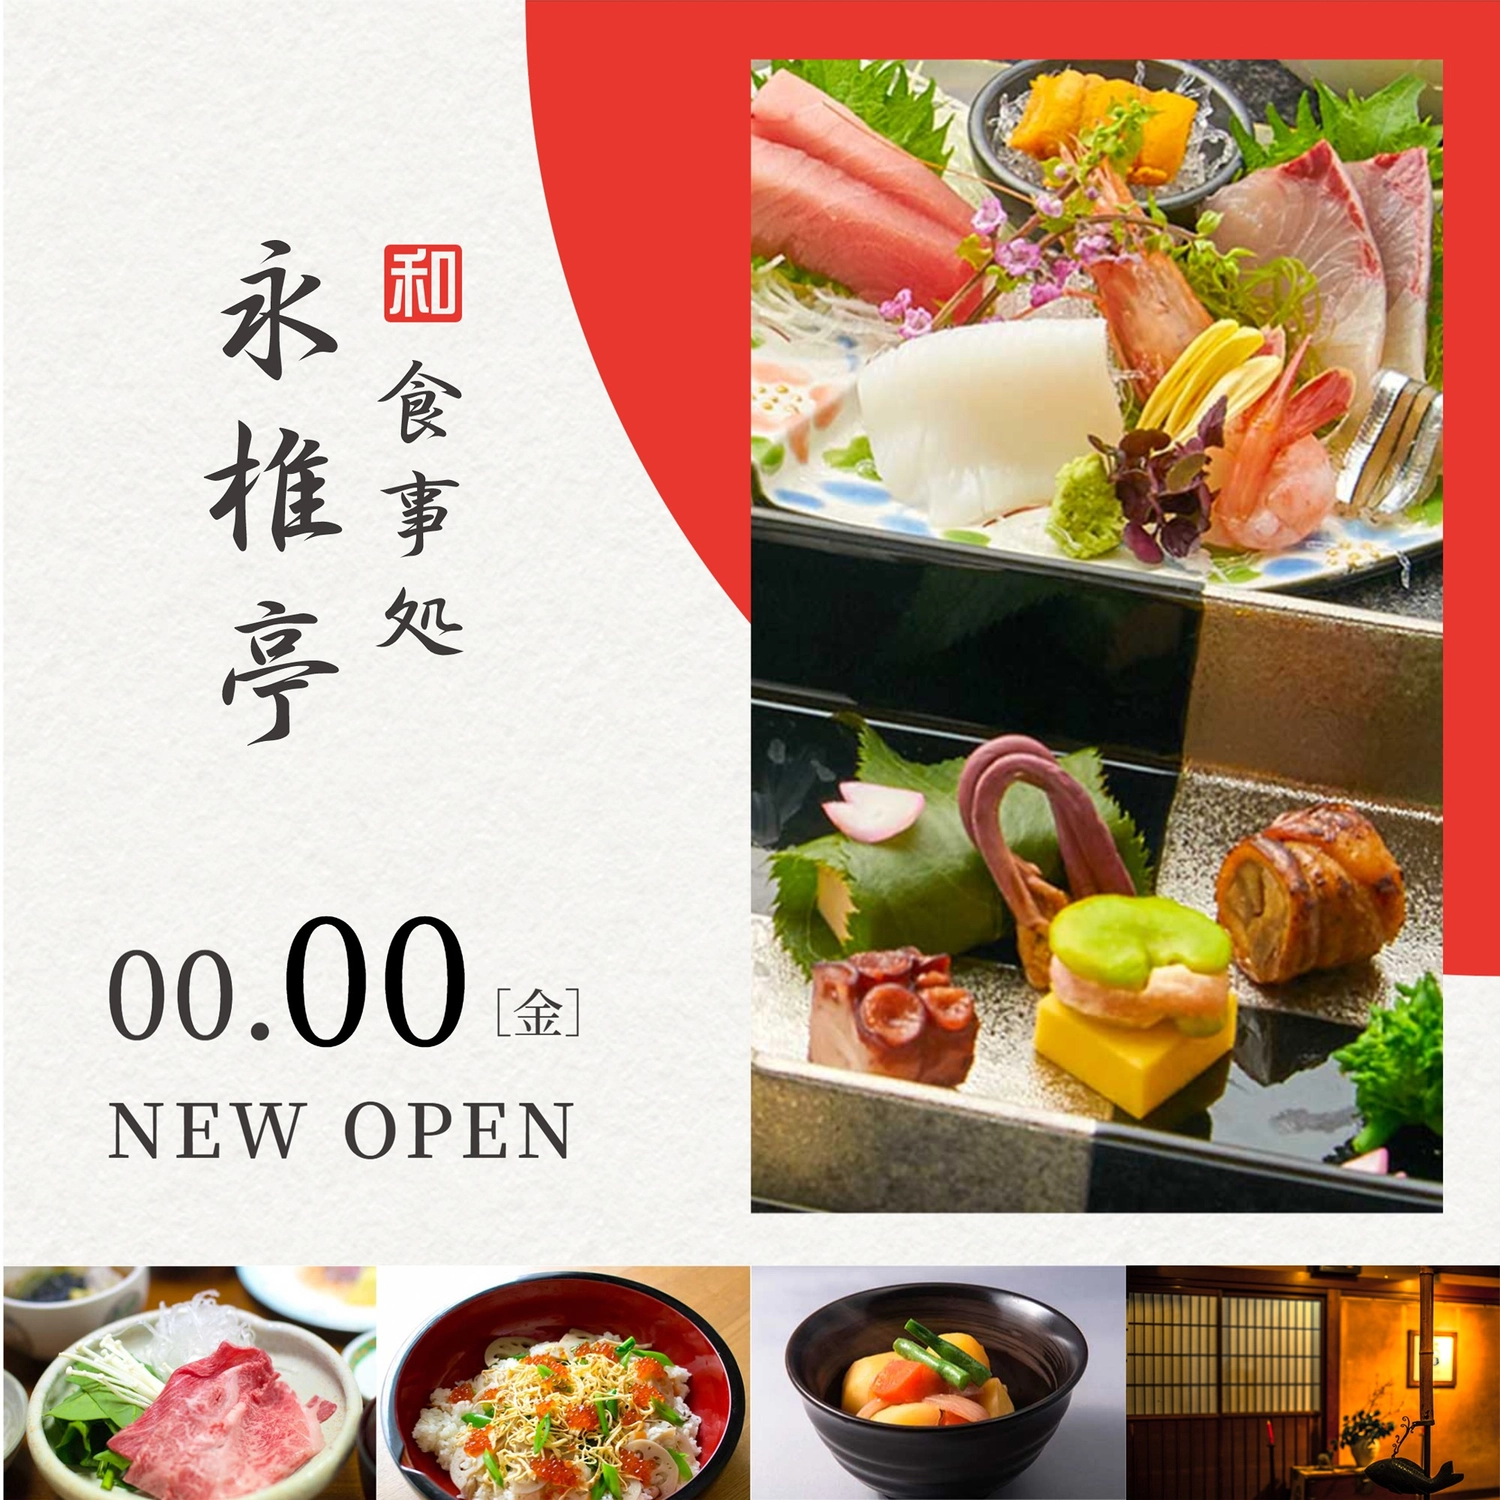 和　食事処　新規開店の案内, 店, 案内, お知らせ, Instagram広告テンプレート